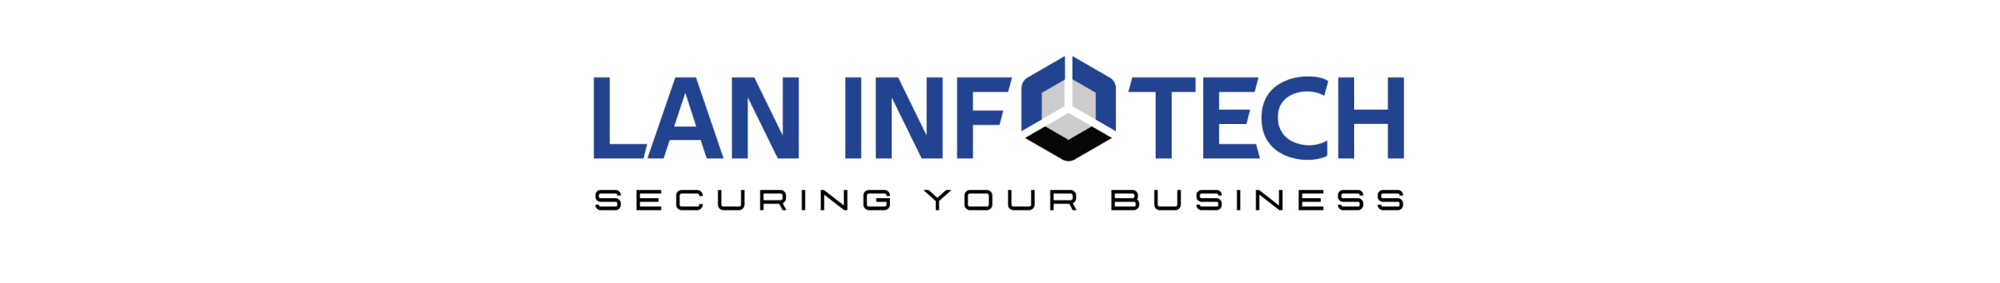 Lan Infotech Logo-2